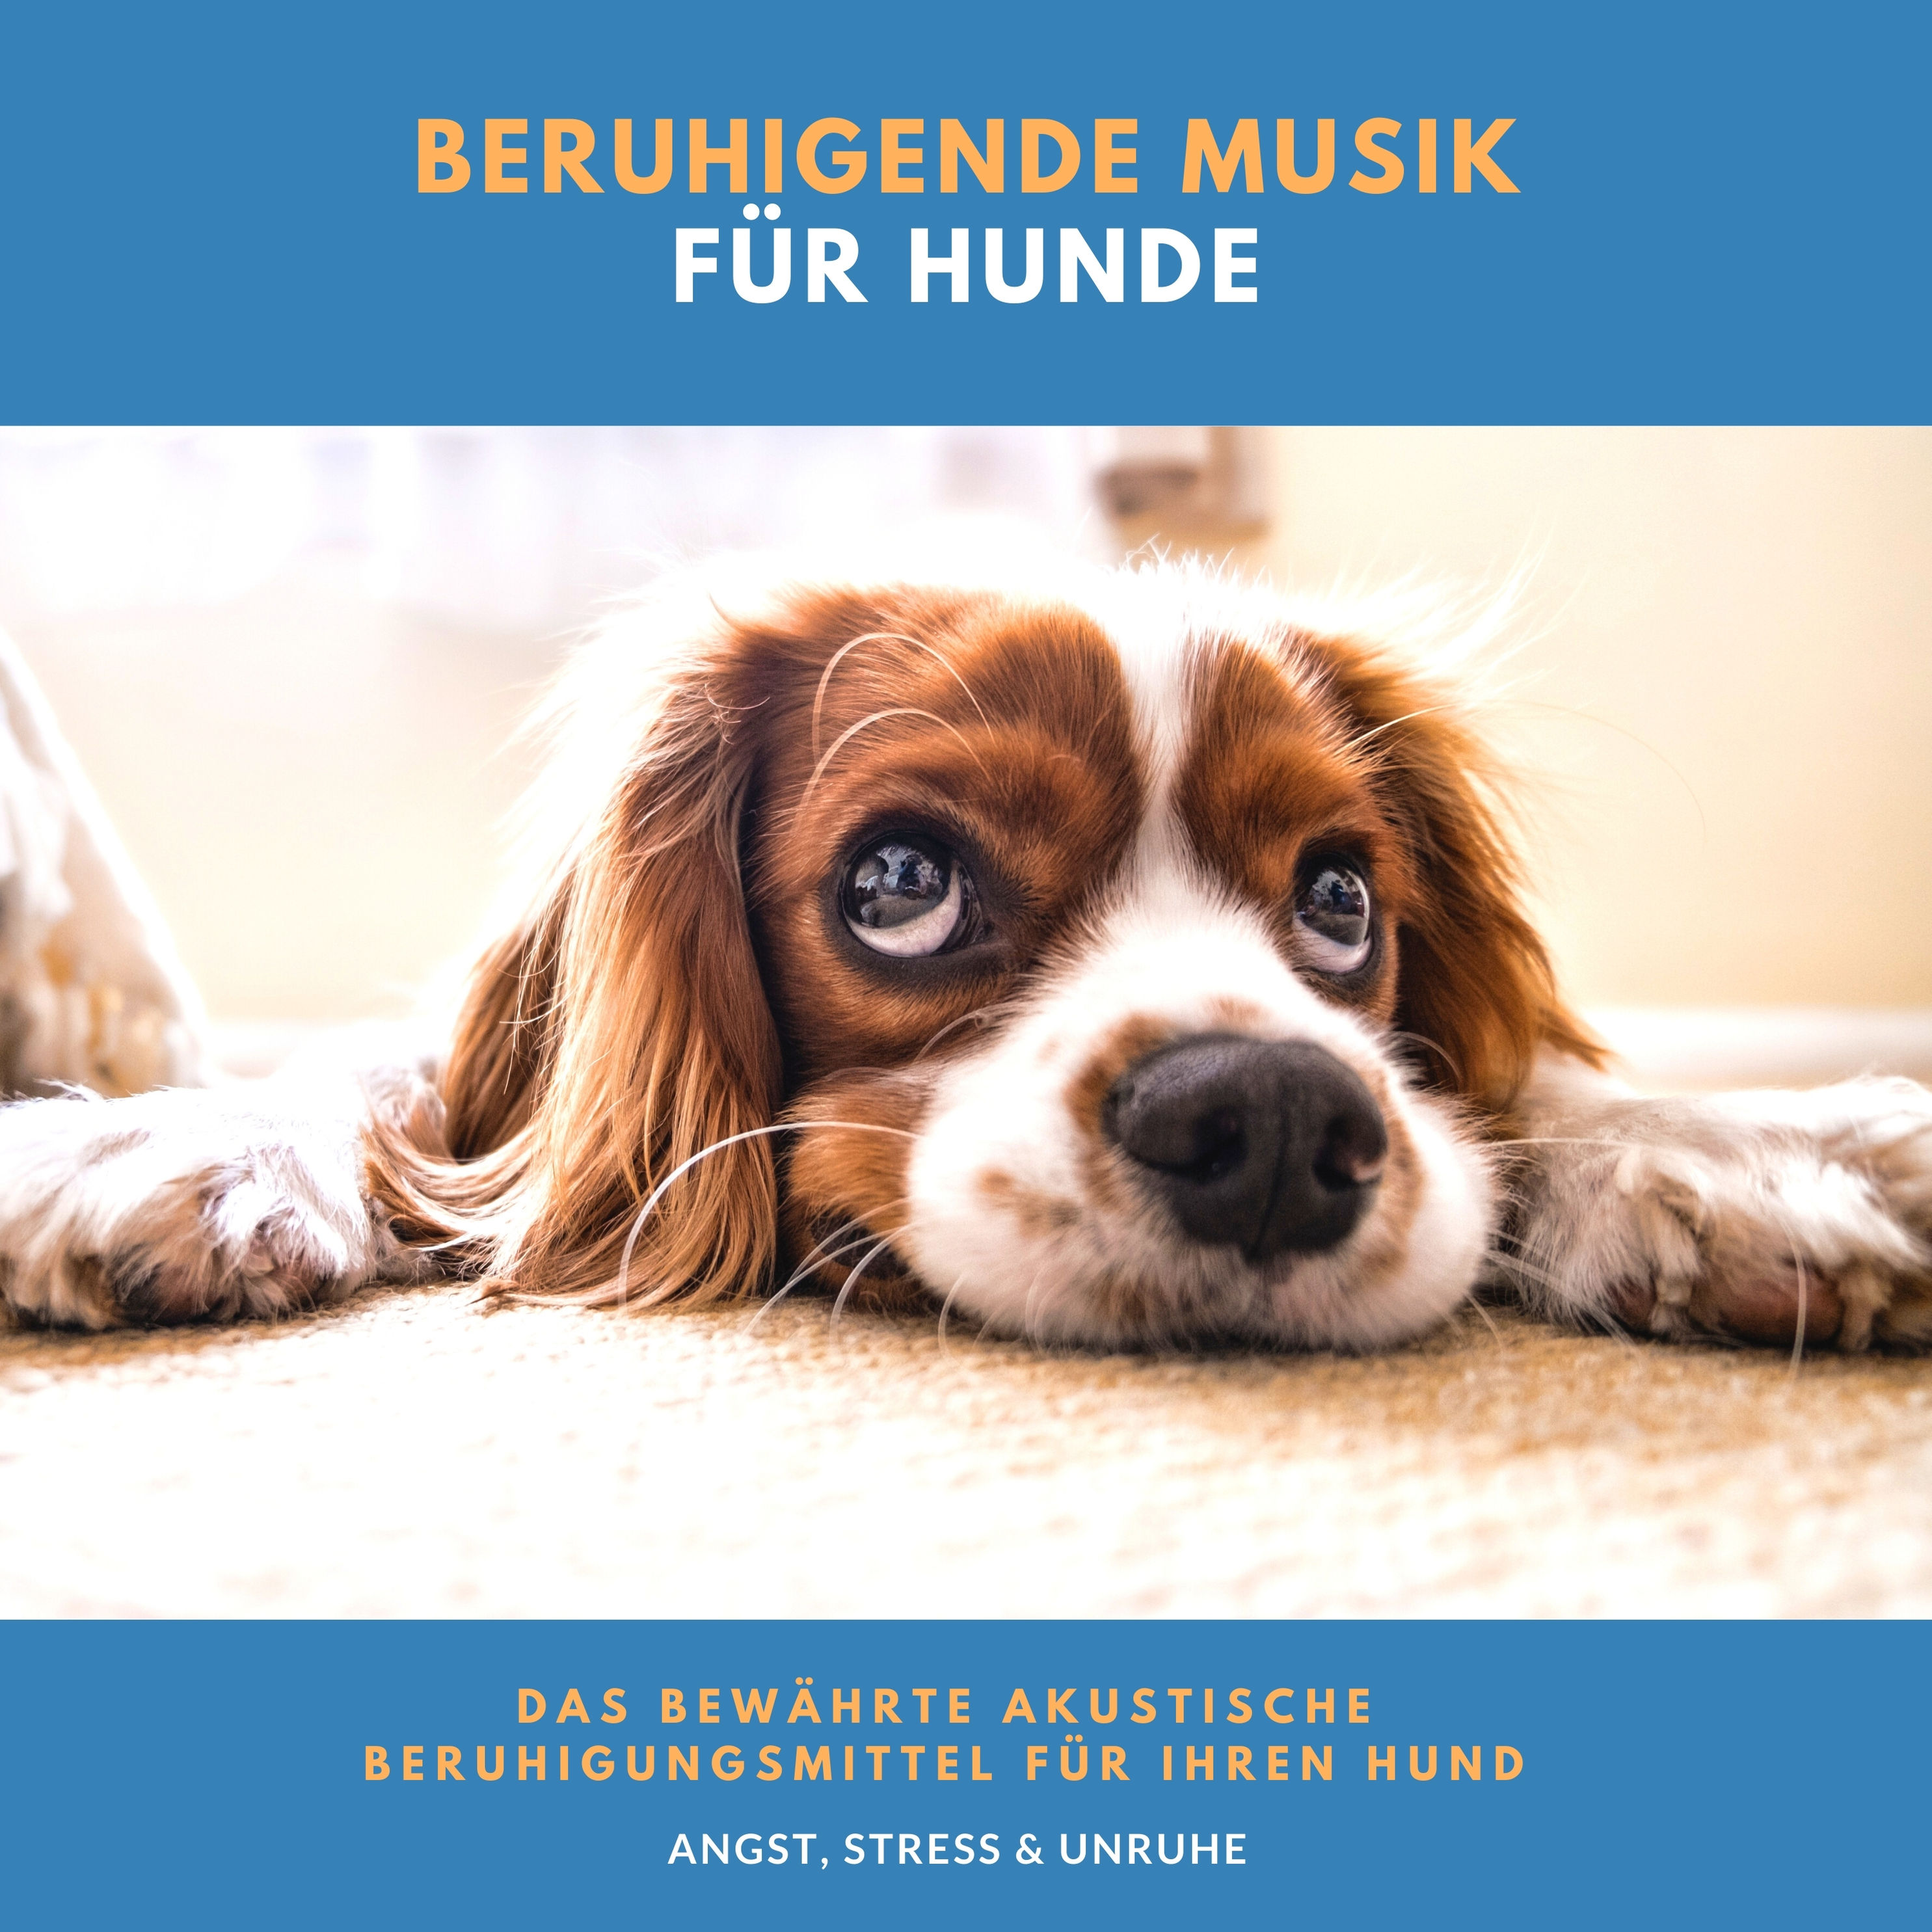 Beruhigende Musik für Hunde Hörbuch downloaden bei Weltbild.ch